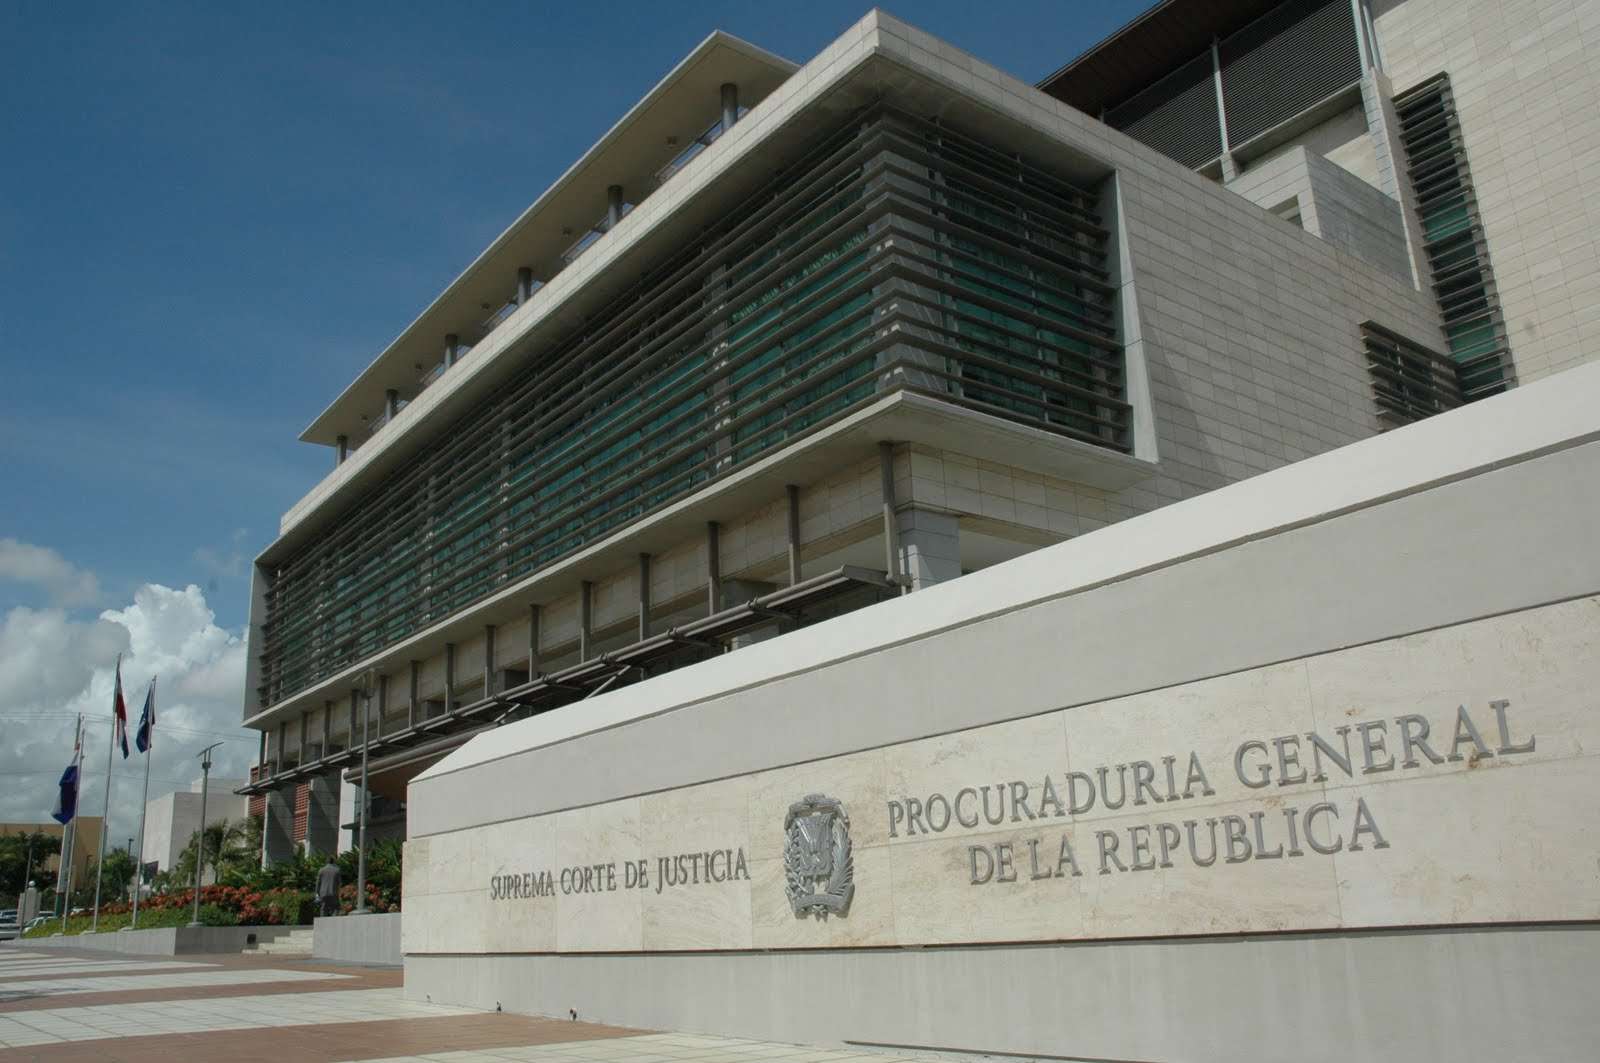 Edificio que aloja la Suprema Corte de Justicia (SCJ) y la Procuraduría General de la República Dominicana.